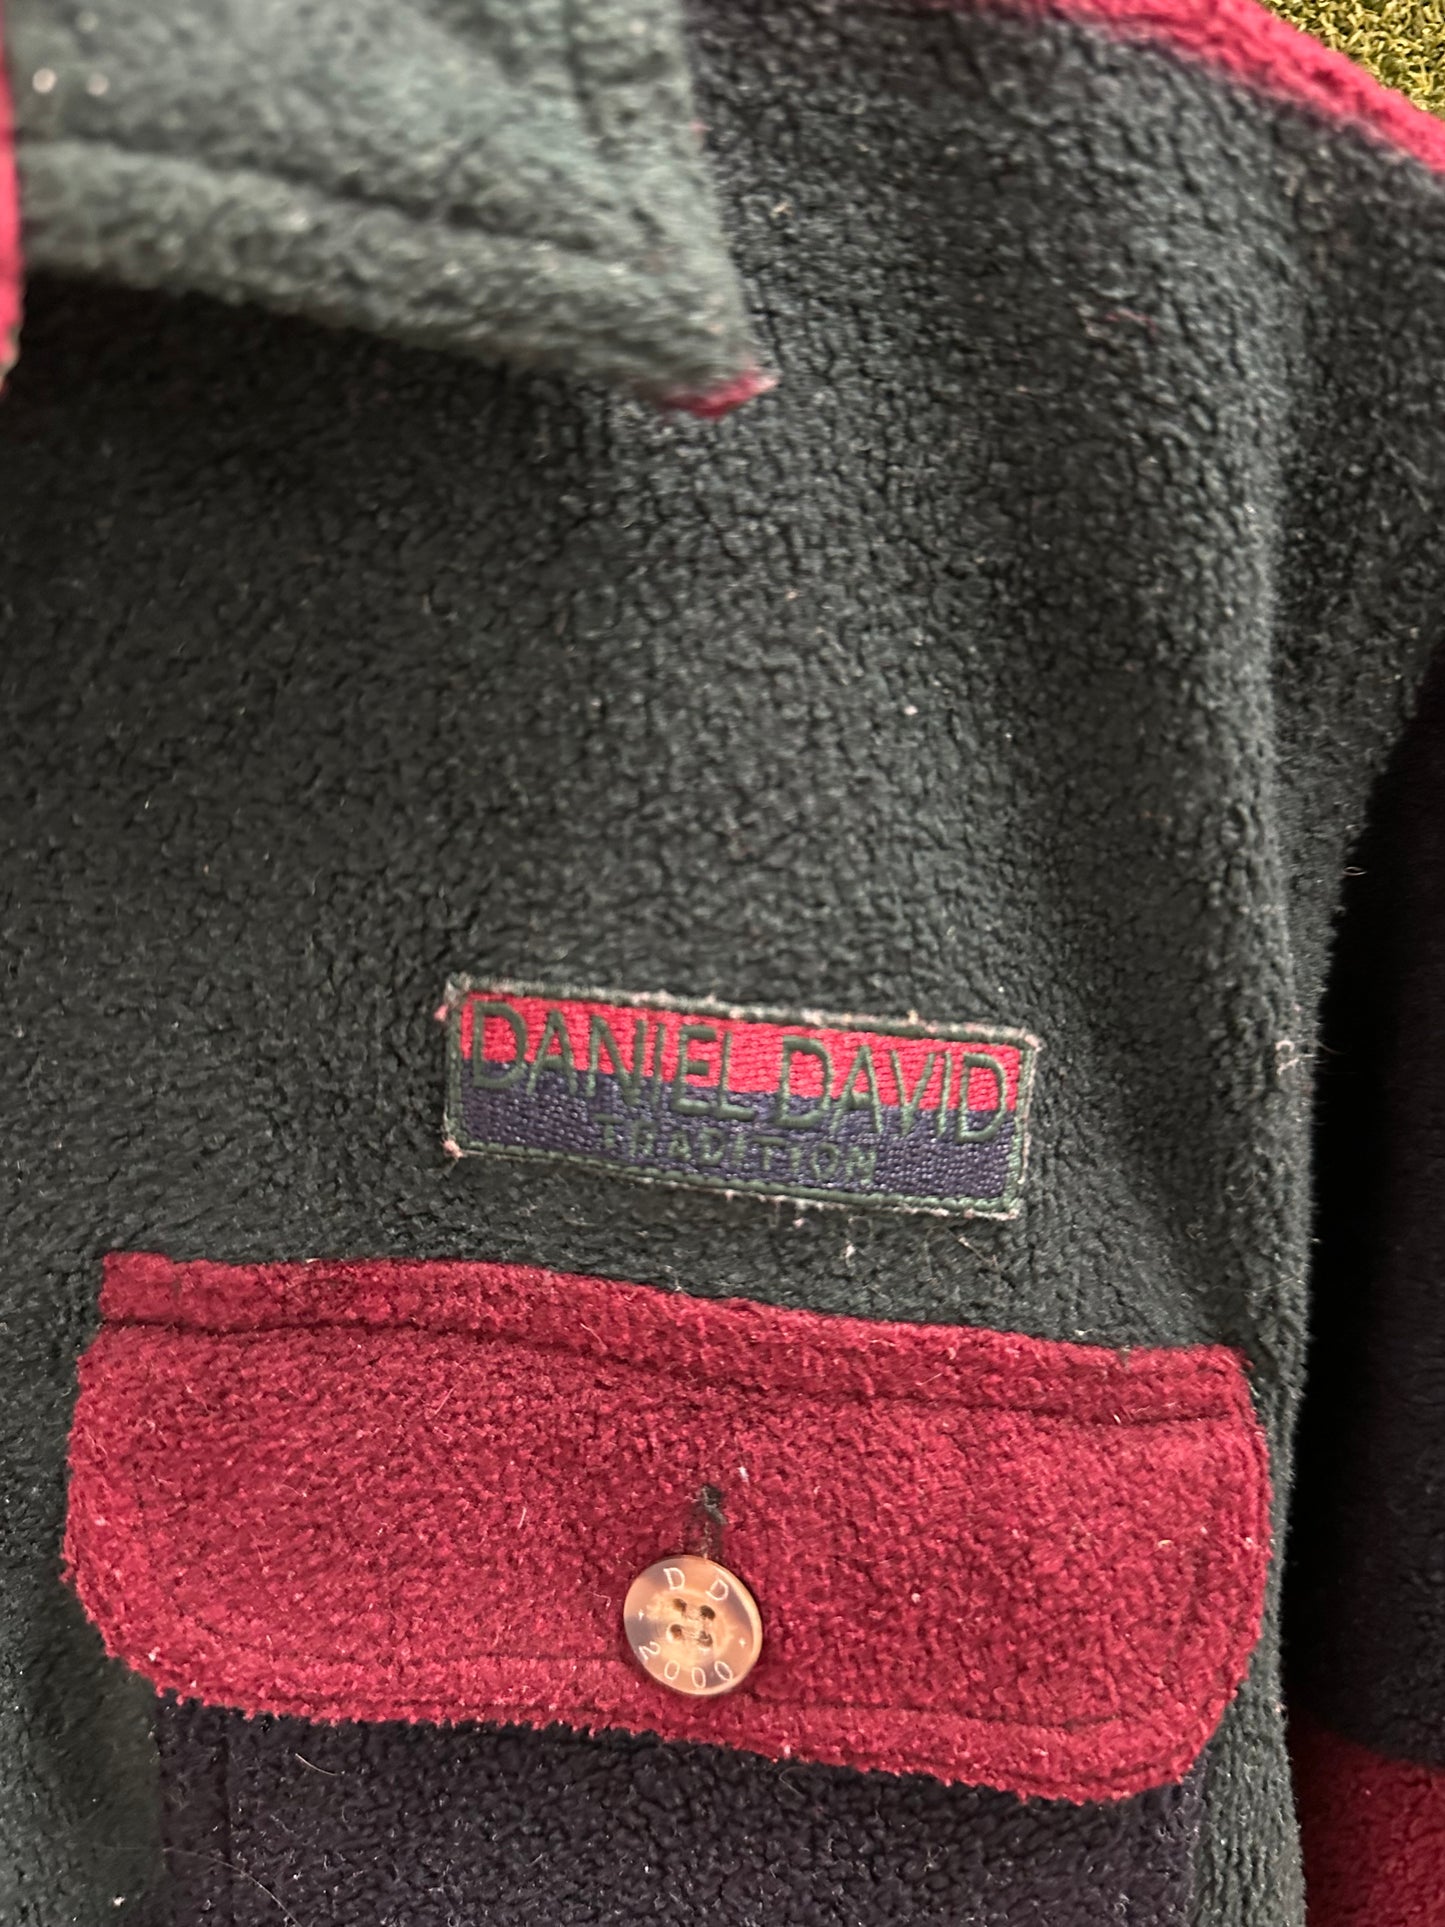 Vintage Daniel David Colour Blocking Fleece Button-up Shirt - M